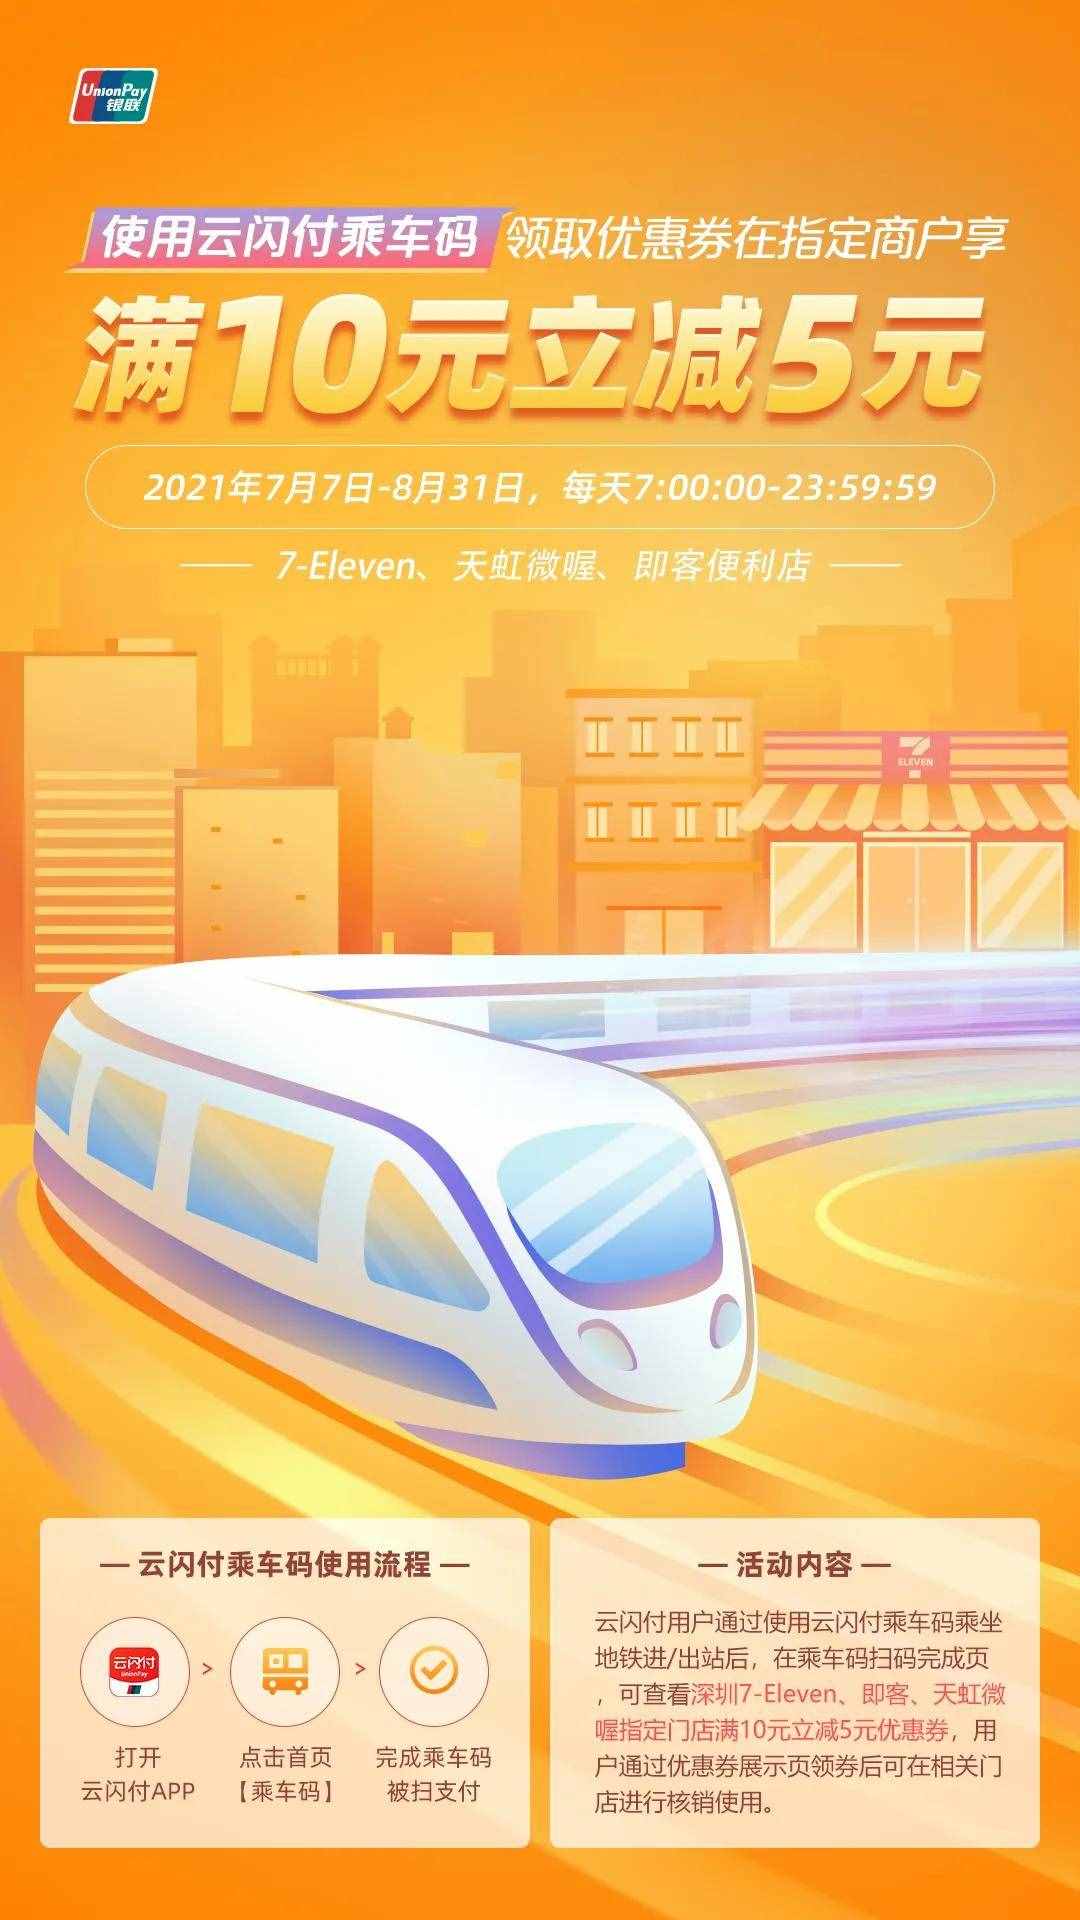 深圳地铁乘车就用银联云闪付 惊喜优惠持续推送